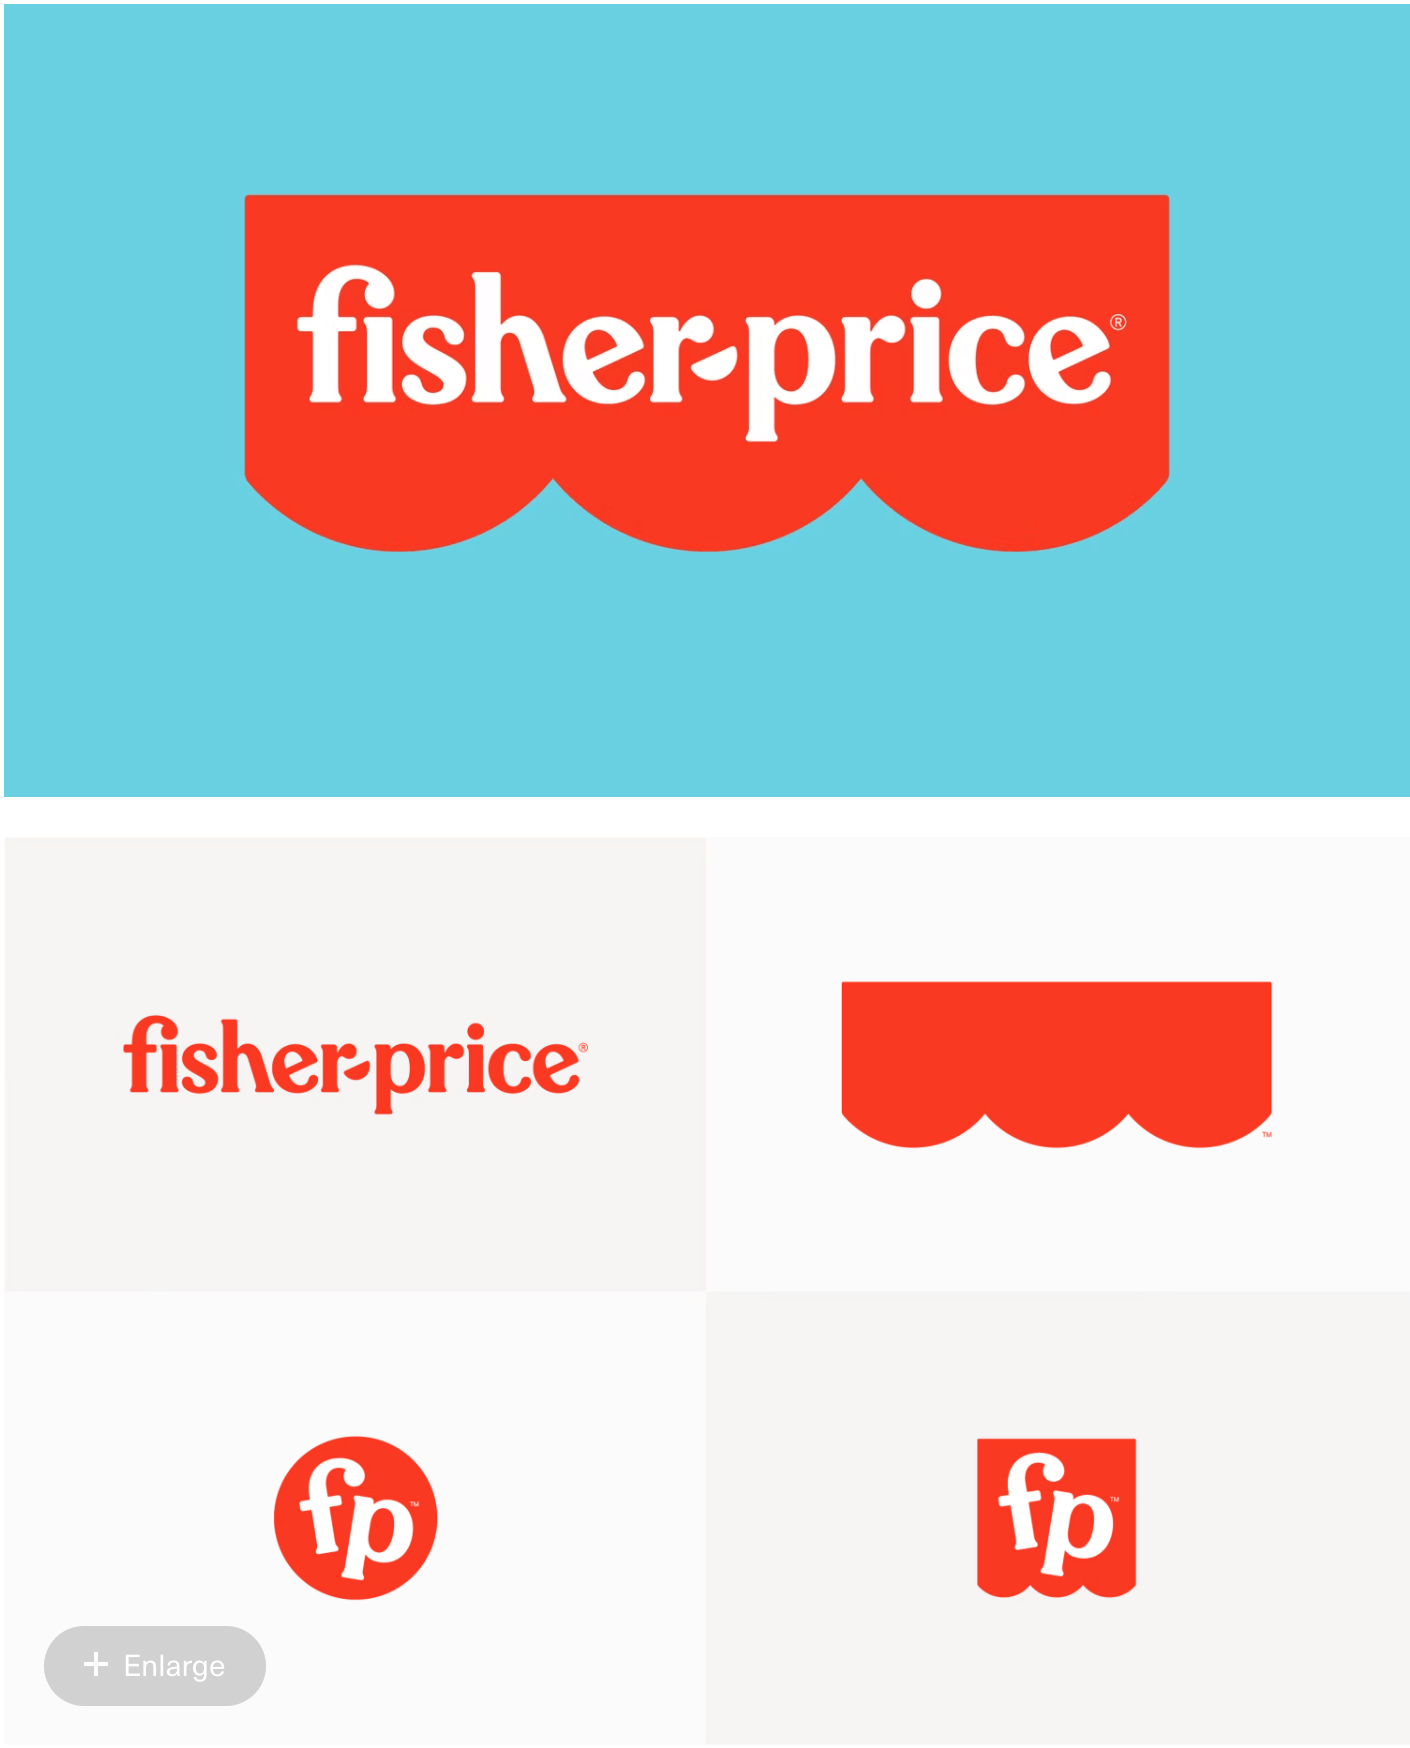 A comparison of Fisher-Price's logo evolution